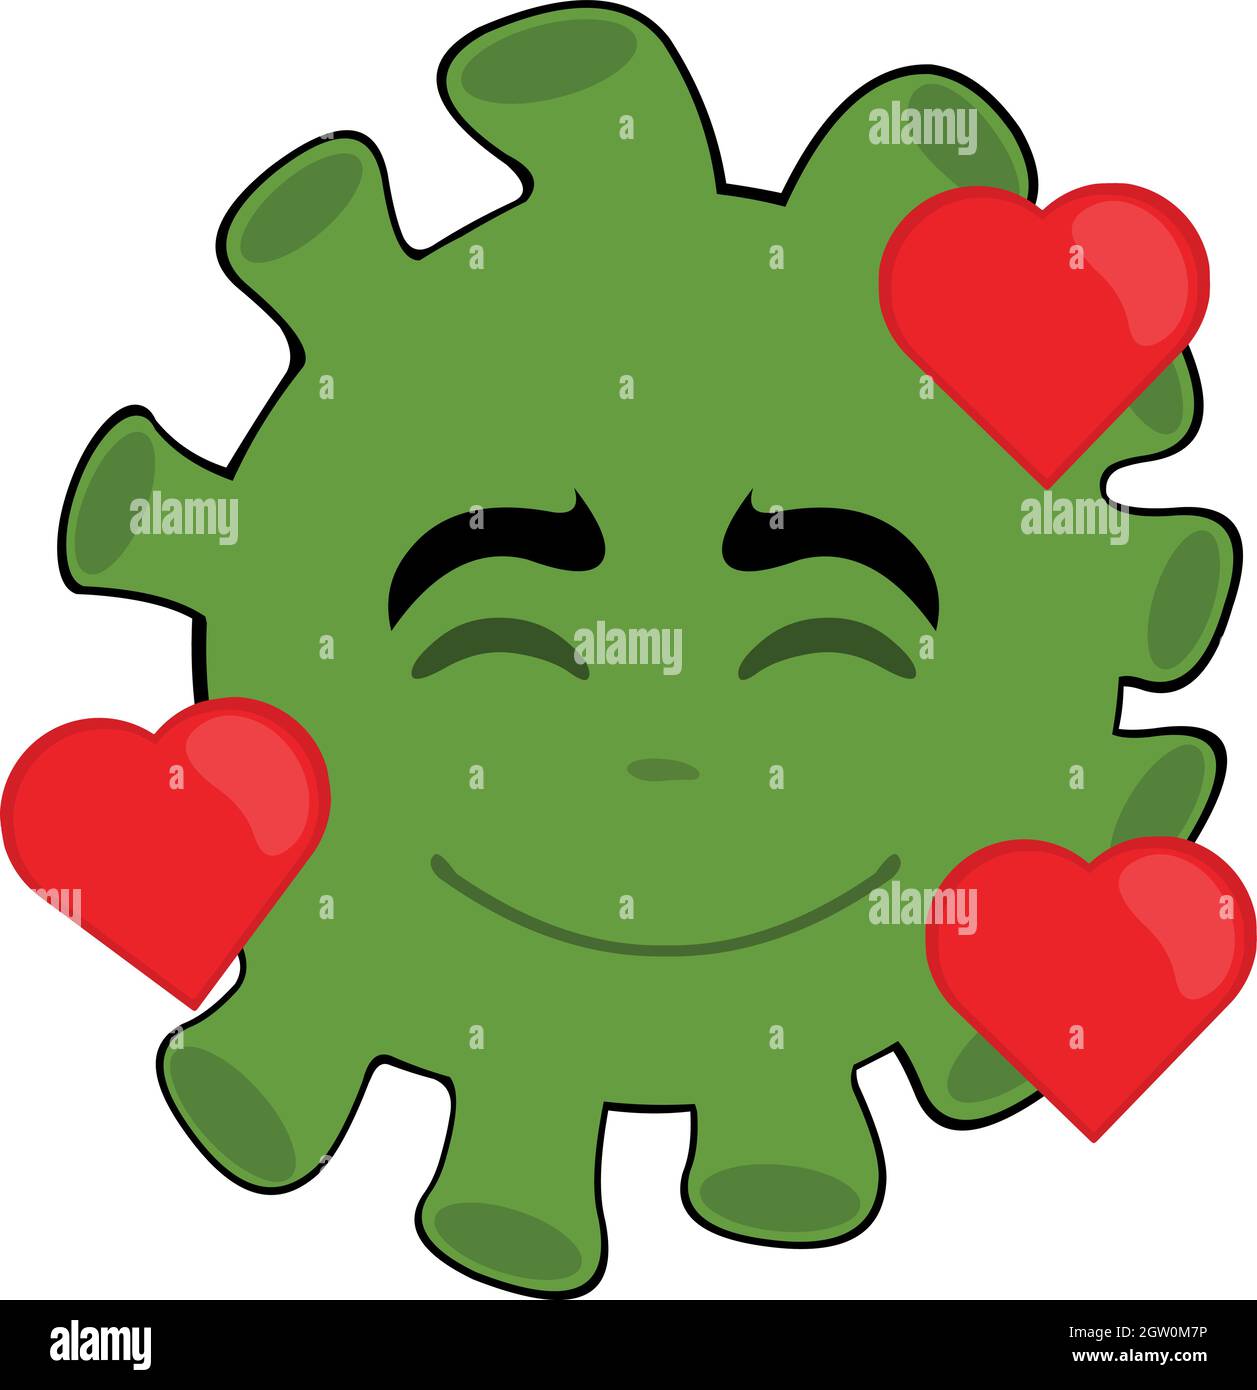 Illustrazione di un'emoticon vettoriale di un cartoon microbe, virus o batteri, circondato da cuori Illustrazione Vettoriale